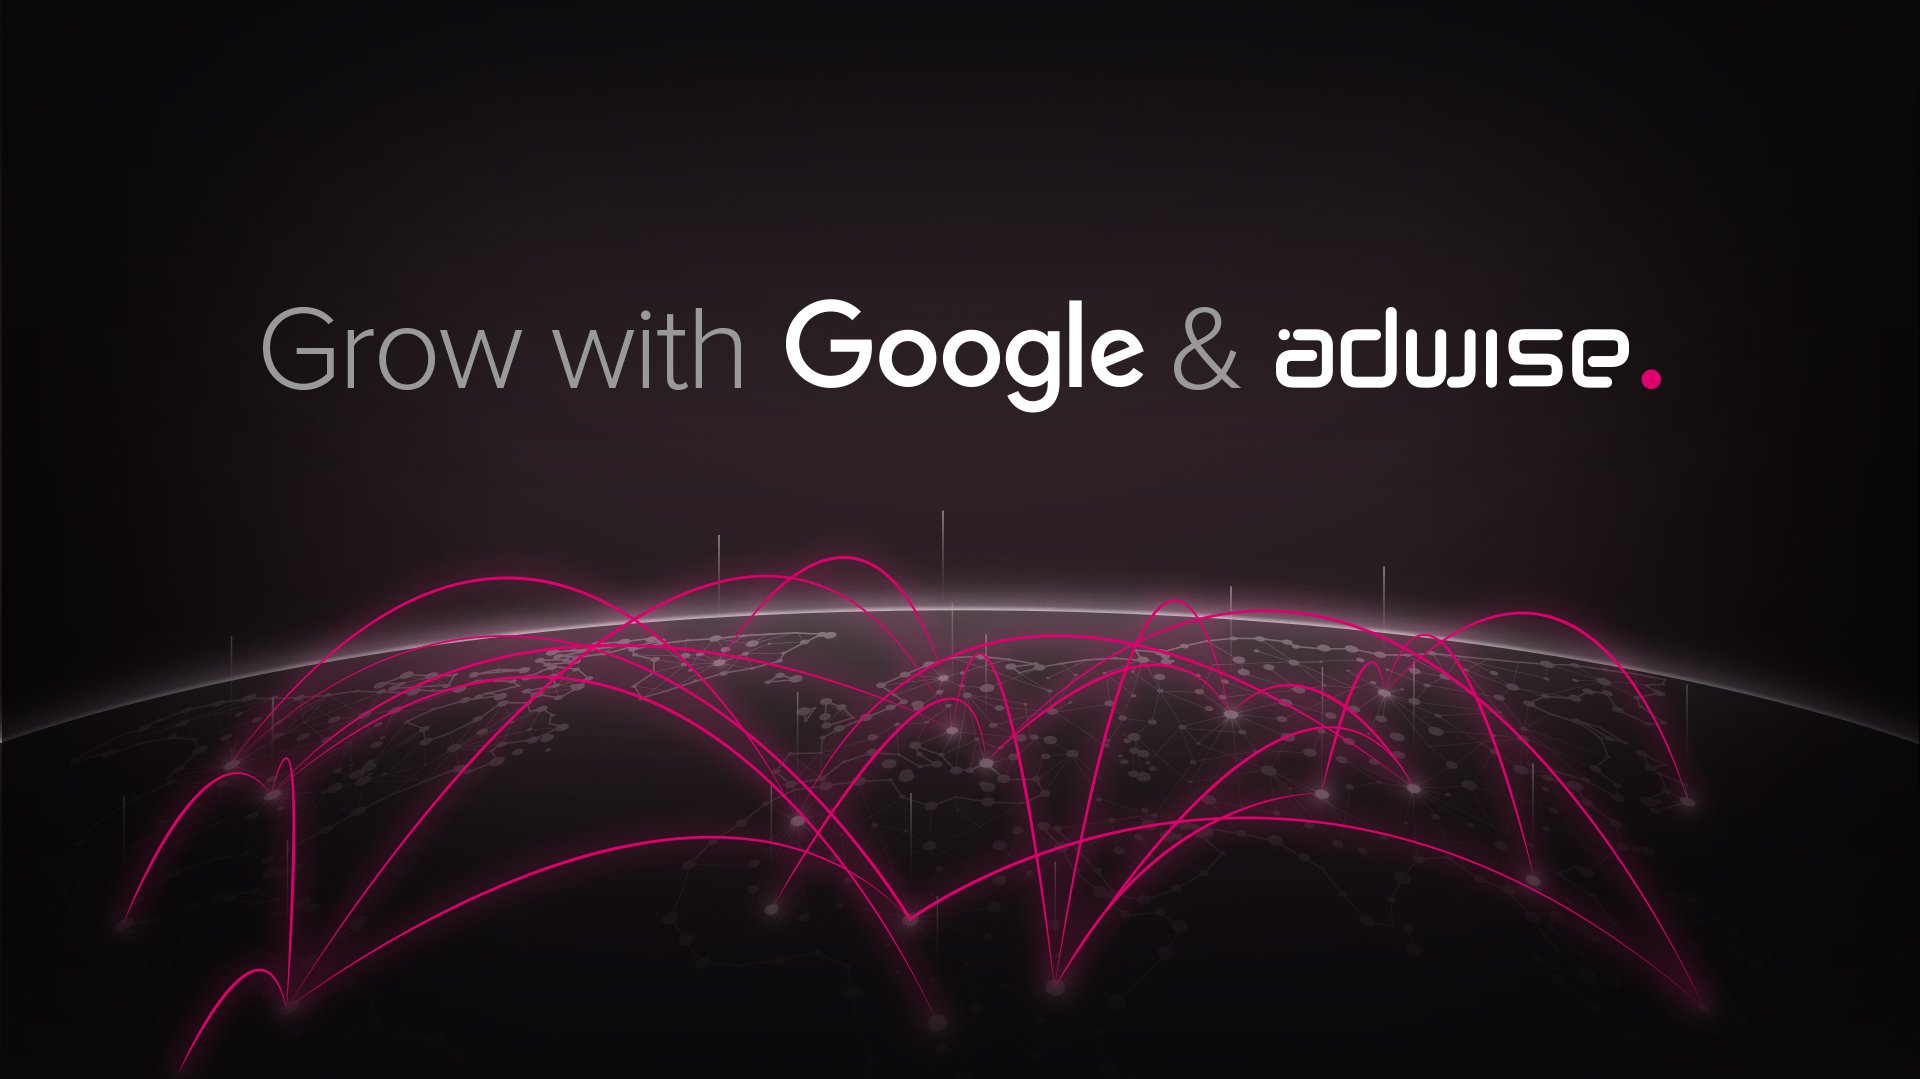 Google verkiest Adwise tot International growth agency